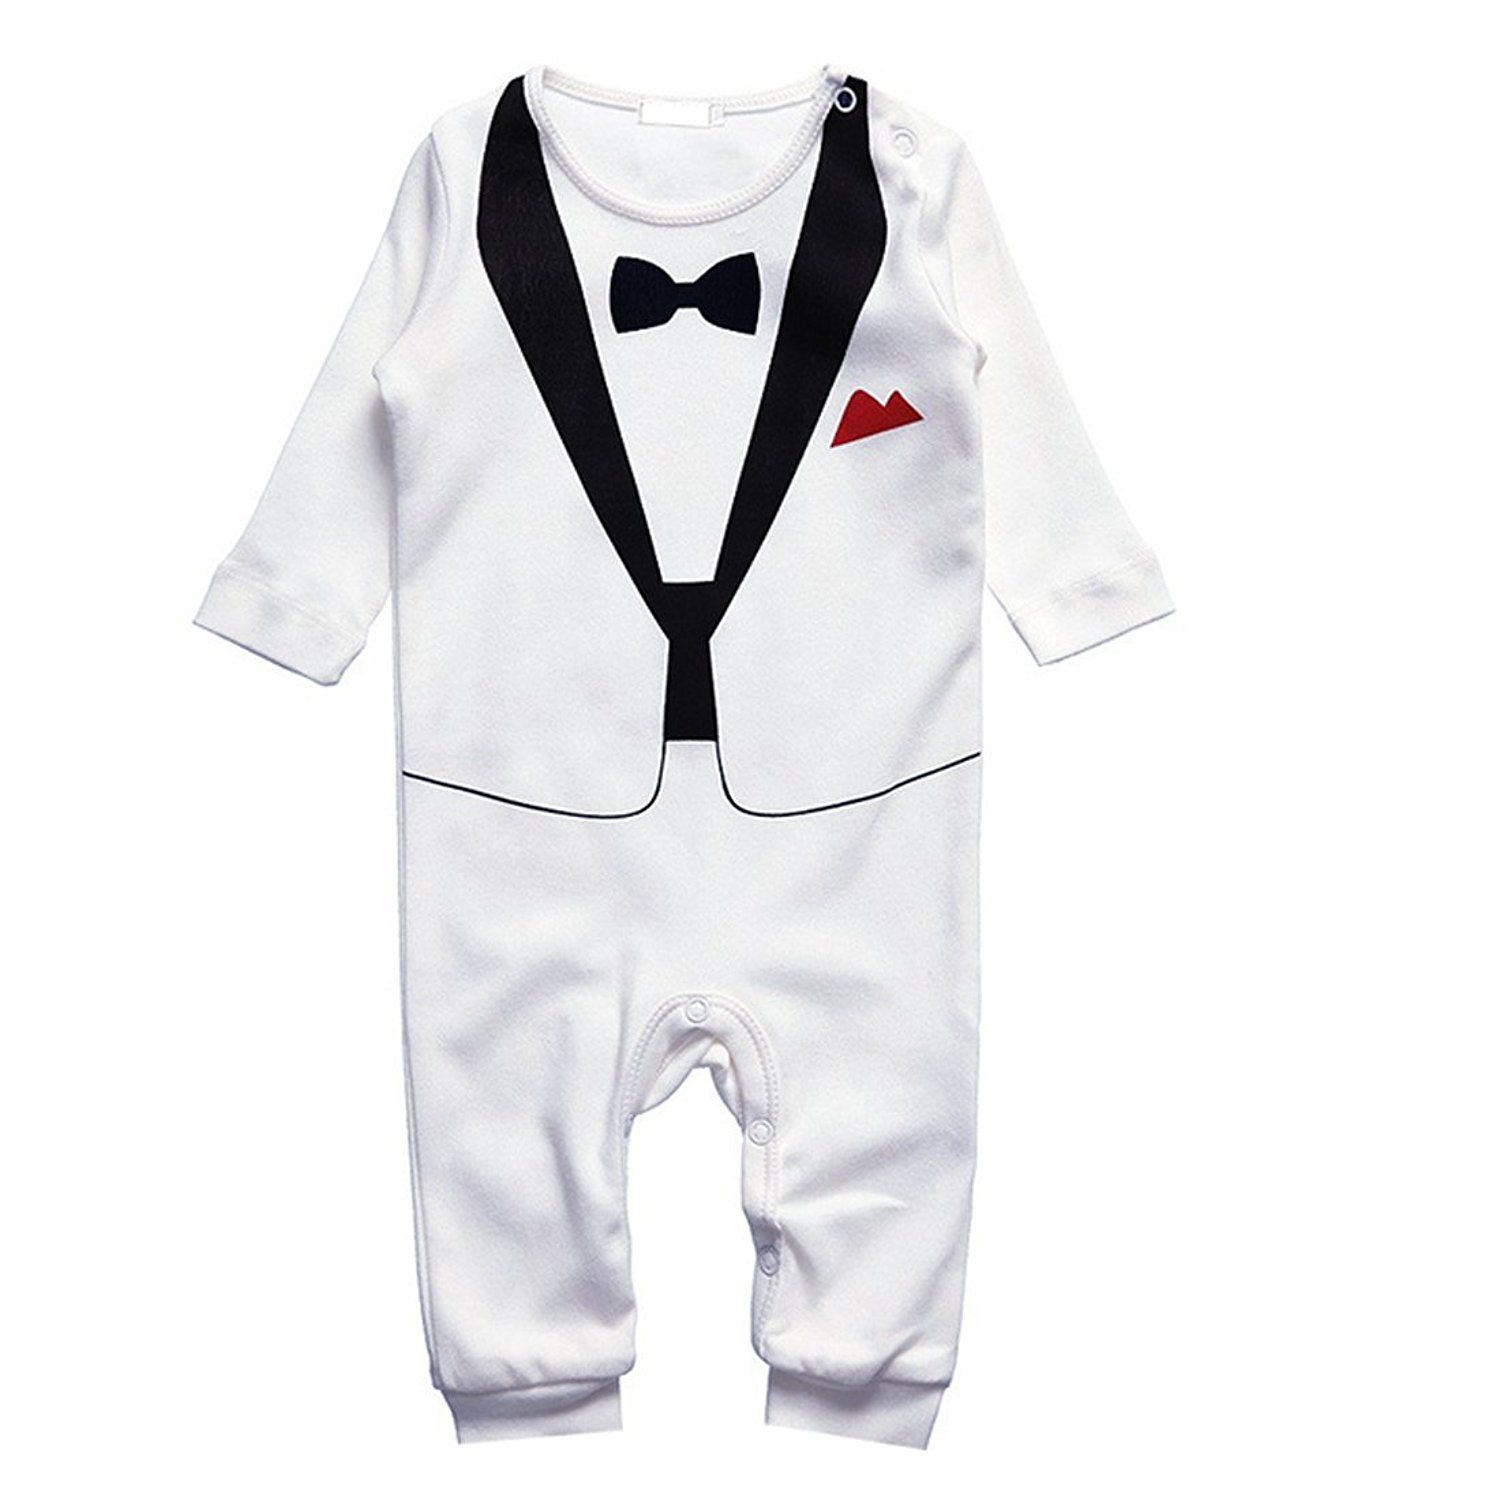 Купить костюм новорожденному. Костюмы для новорожденных мальчиков. Младенец в костюме. Праздничный костюм для мальчика. Костюмы для малышей мальчиков.